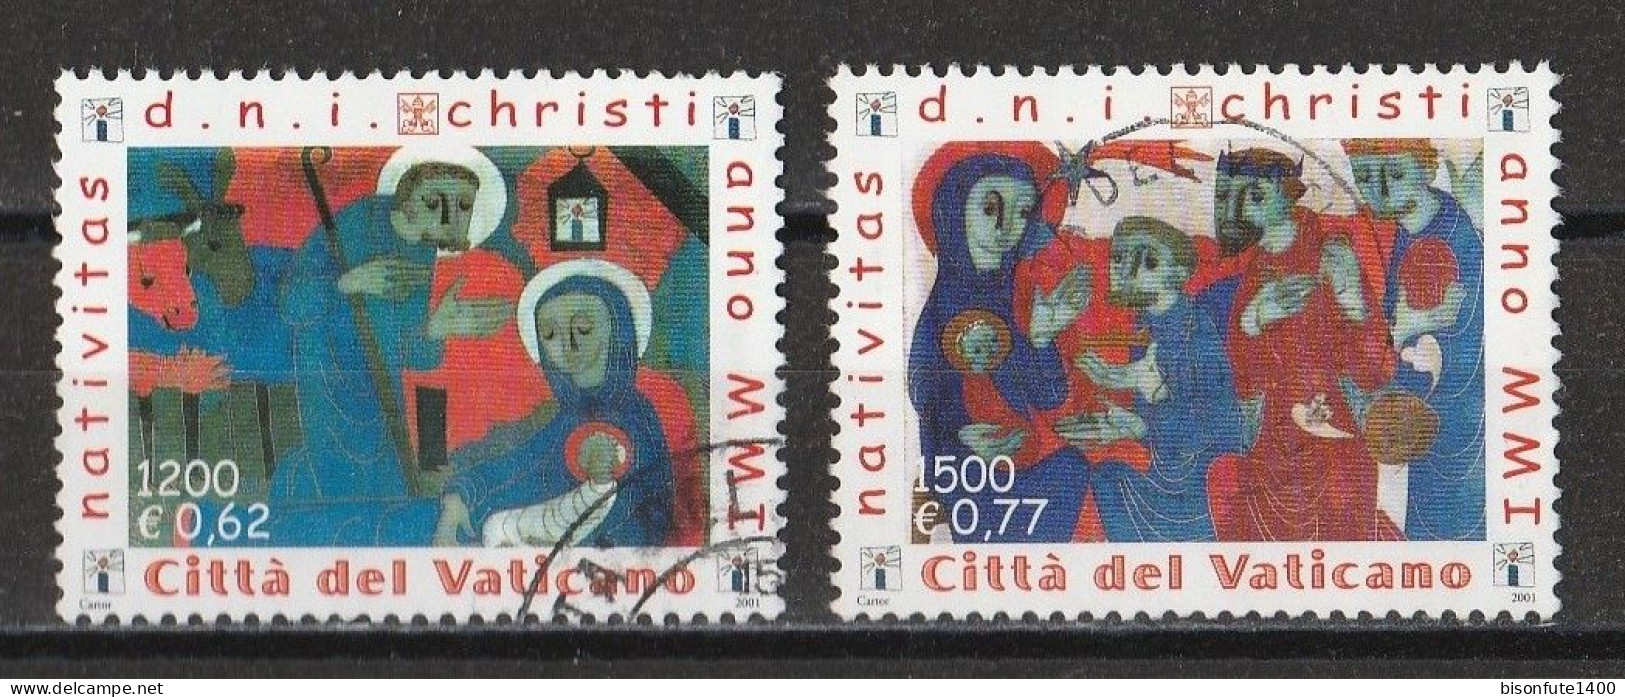 Vatican 2001 : Timbres Yvert & Tellier N° 1238 - 1239 - 1240 - 1246 - 1247 - 1248 Et 1249 Oblitérés. - Gebruikt